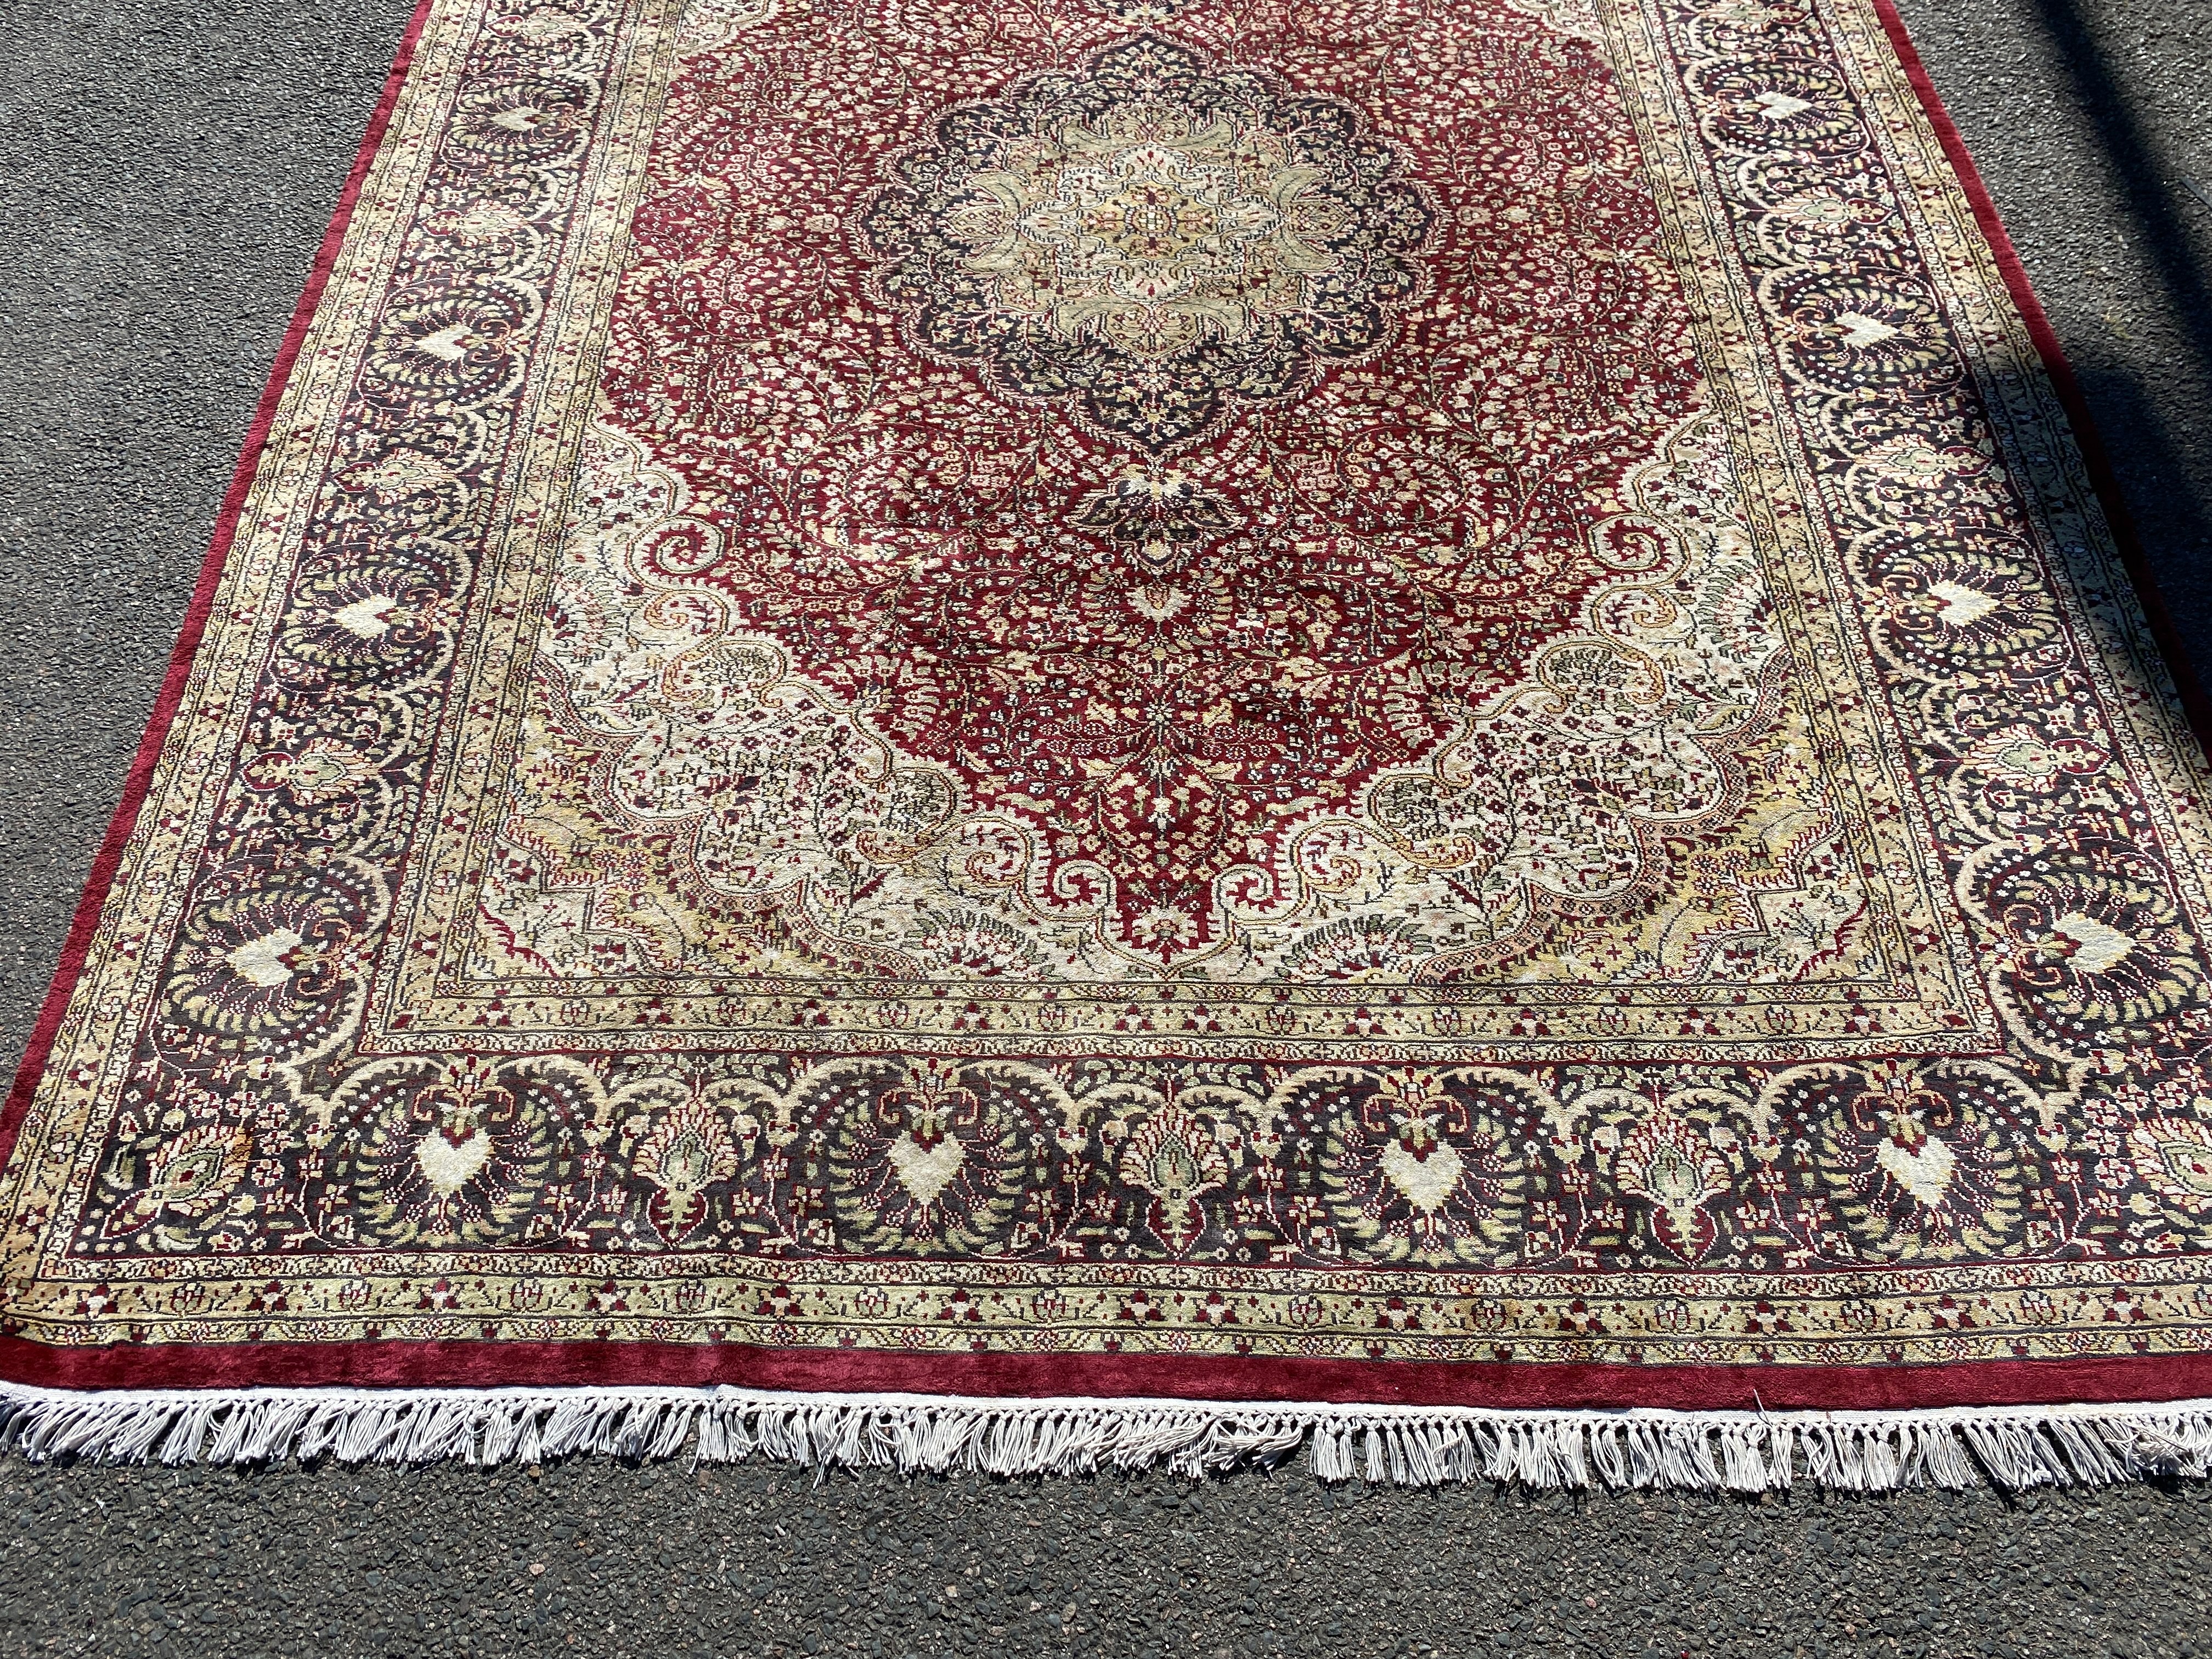 A Kashmiri part silk burgundy ground floral carpet, 330 x 240cm